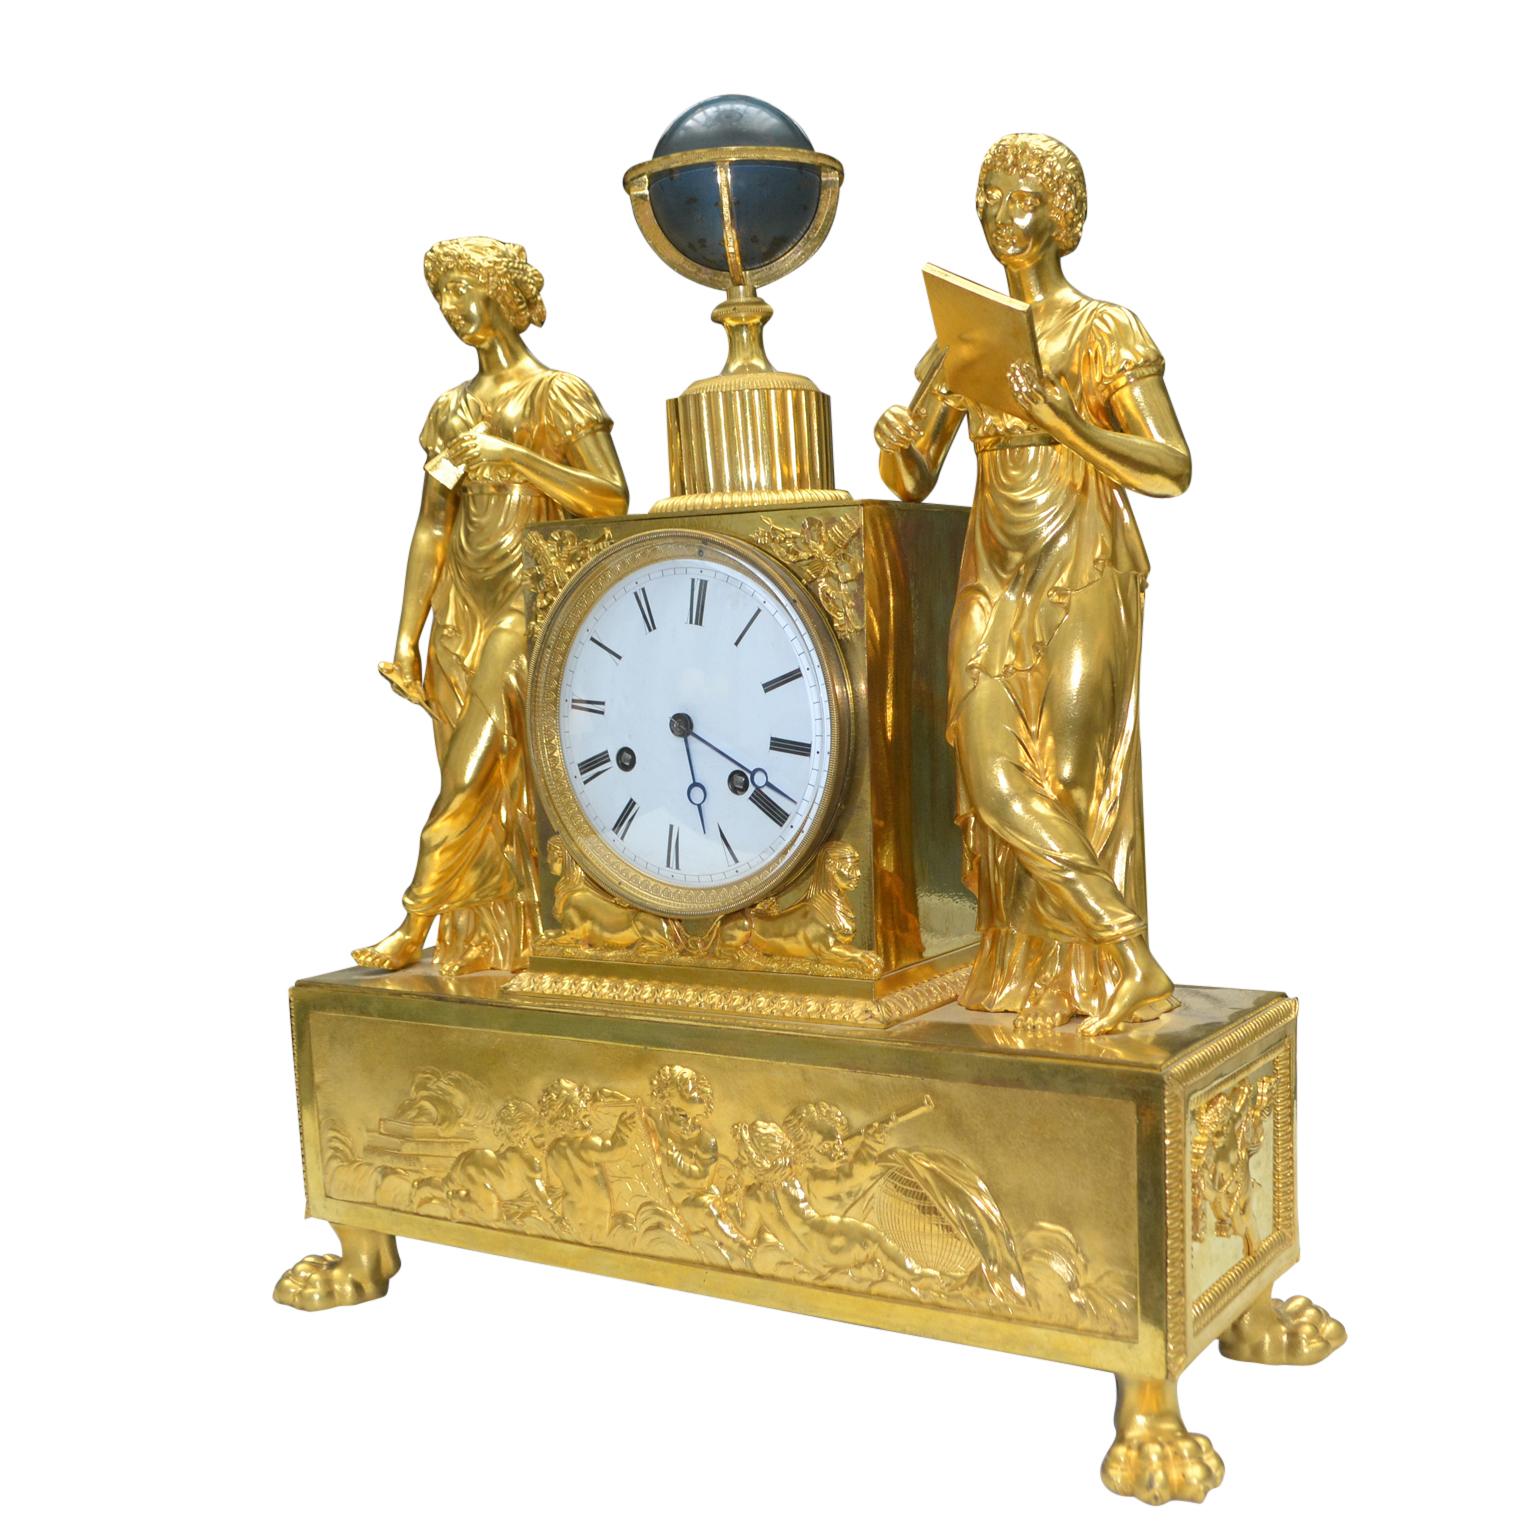 Eine schöne vergoldete Bronzeuhr aus dem frühen 19. Jahrhundert, die eine Allegorie der Astronomie darstellt. Sie zeigt zwei klassisch drapierte Jungfrauen, die auf beiden Seiten eines Sockels stehen, der das Uhrwerk enthält, das von einem